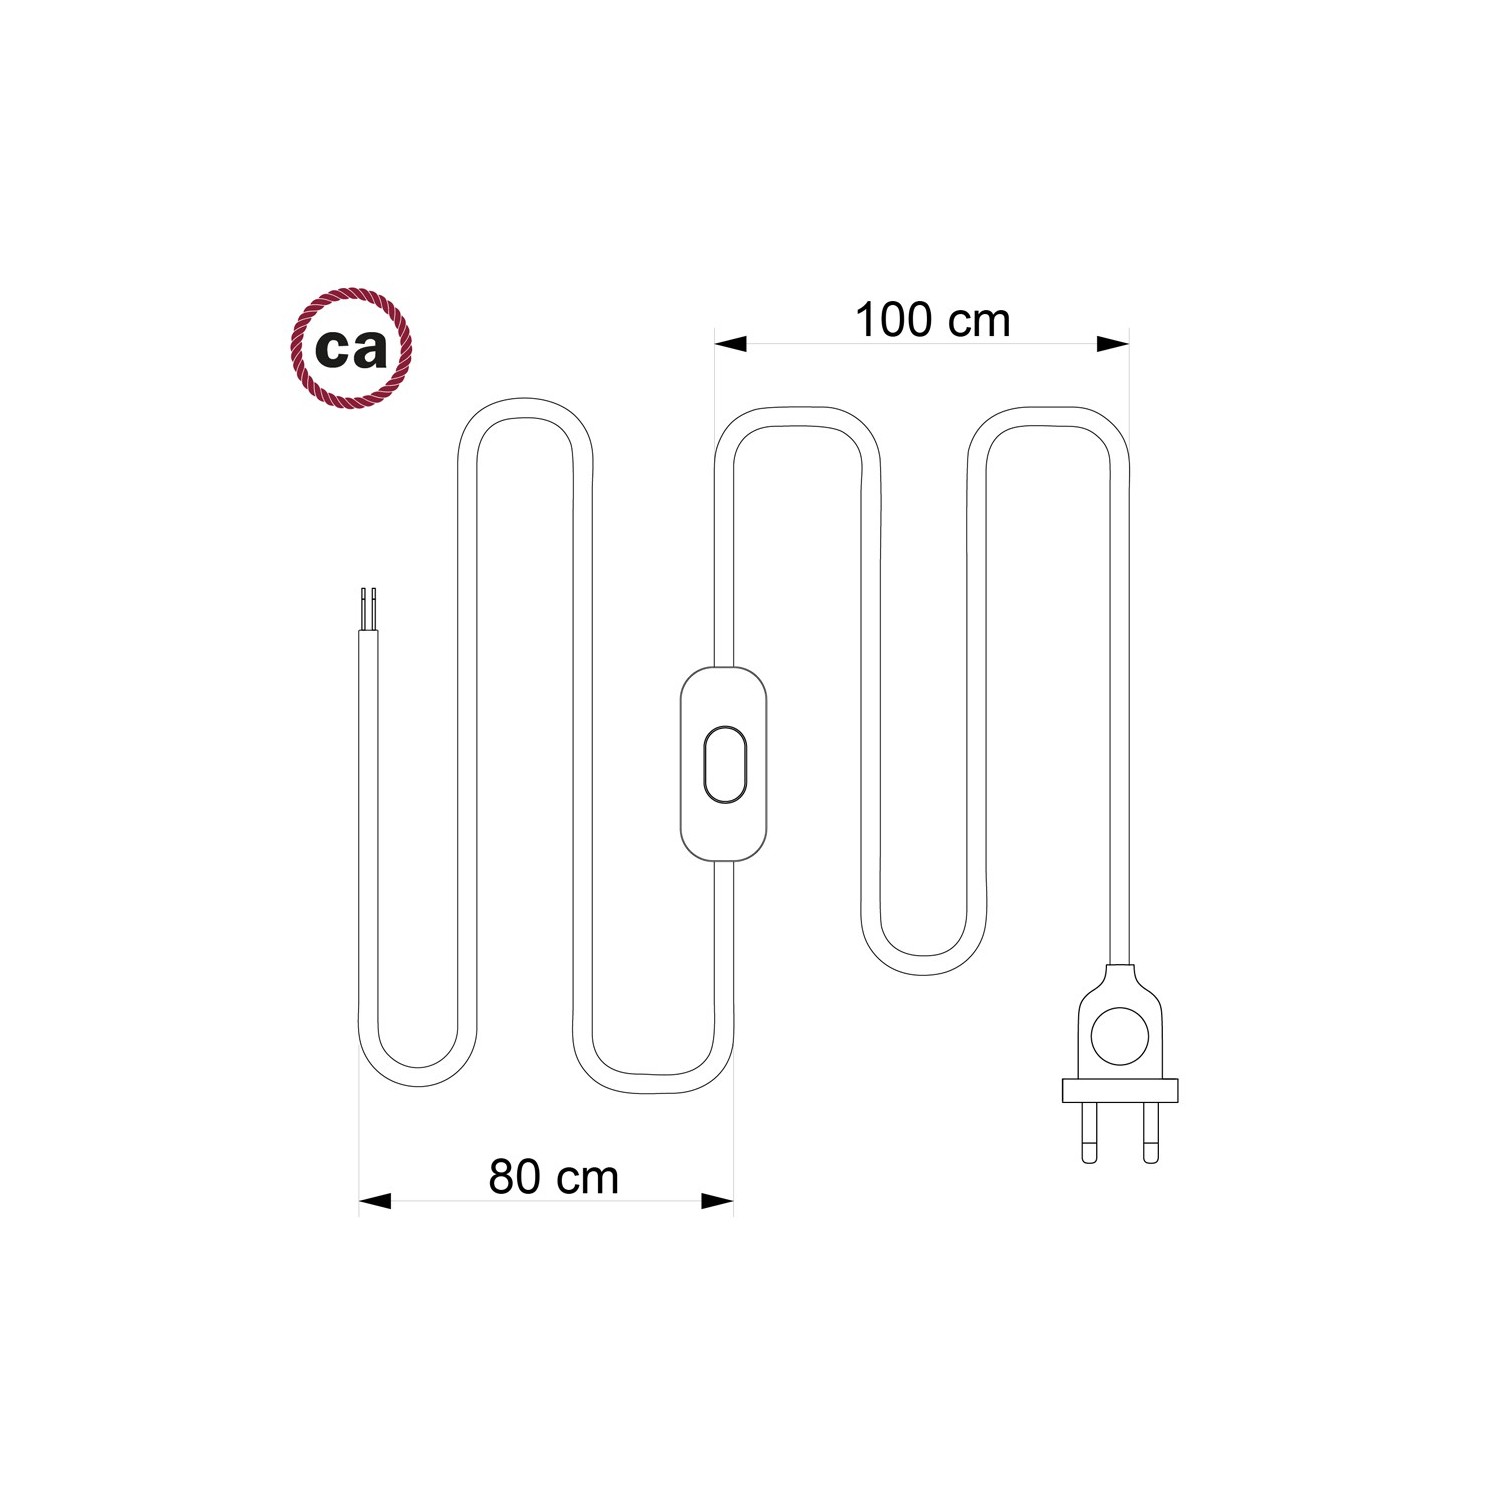 Cordon pour lampe, câble RS81 Coton et Lin Naturel Noir 1,80 m. Choisissez la couleur de la fiche et de l'interrupteur!